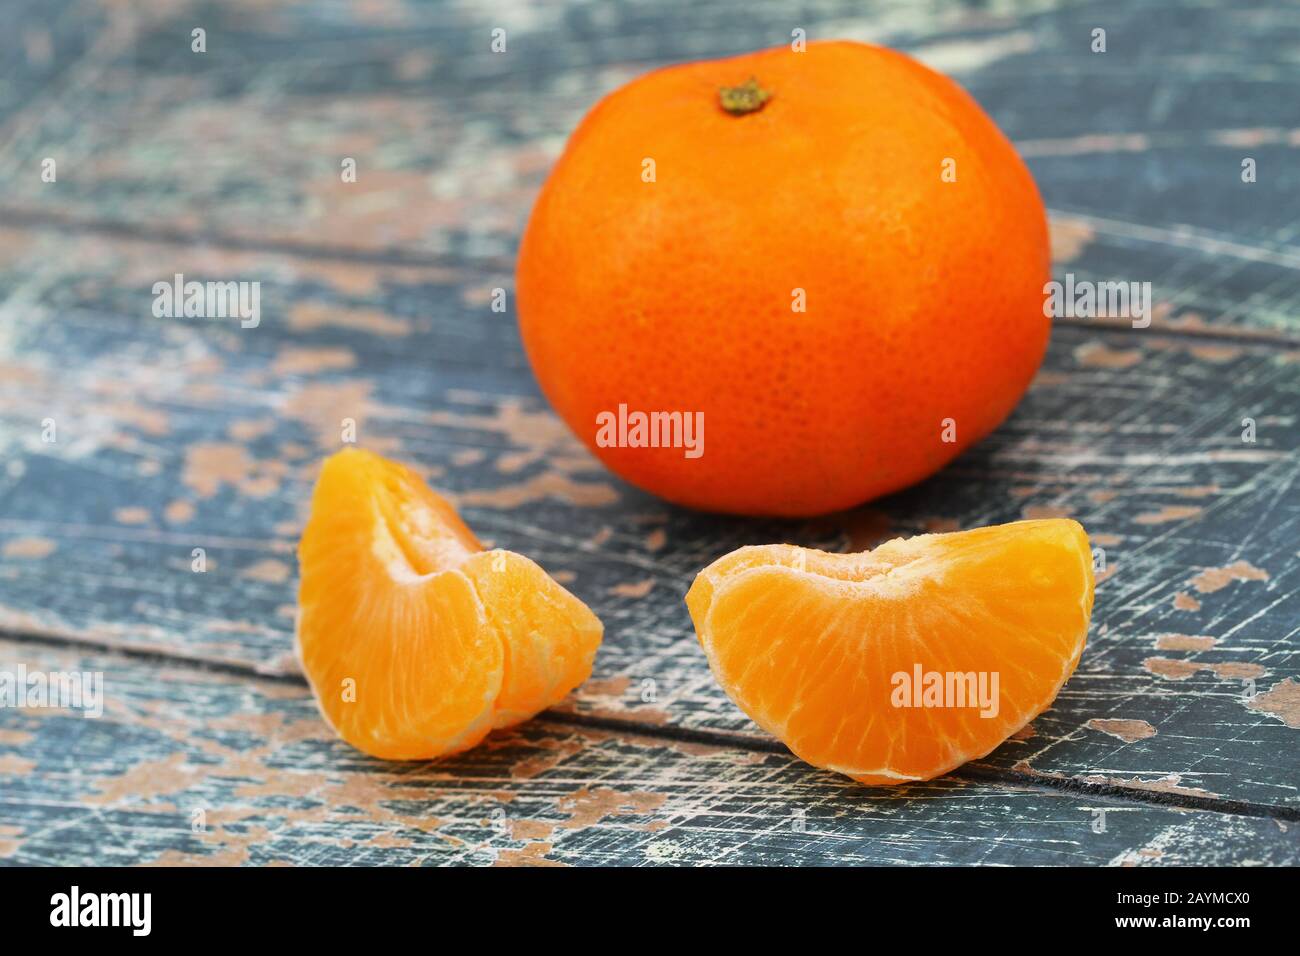 Pezzi di mandarino pelato e mandarino intero su una superficie rustica in legno Foto Stock